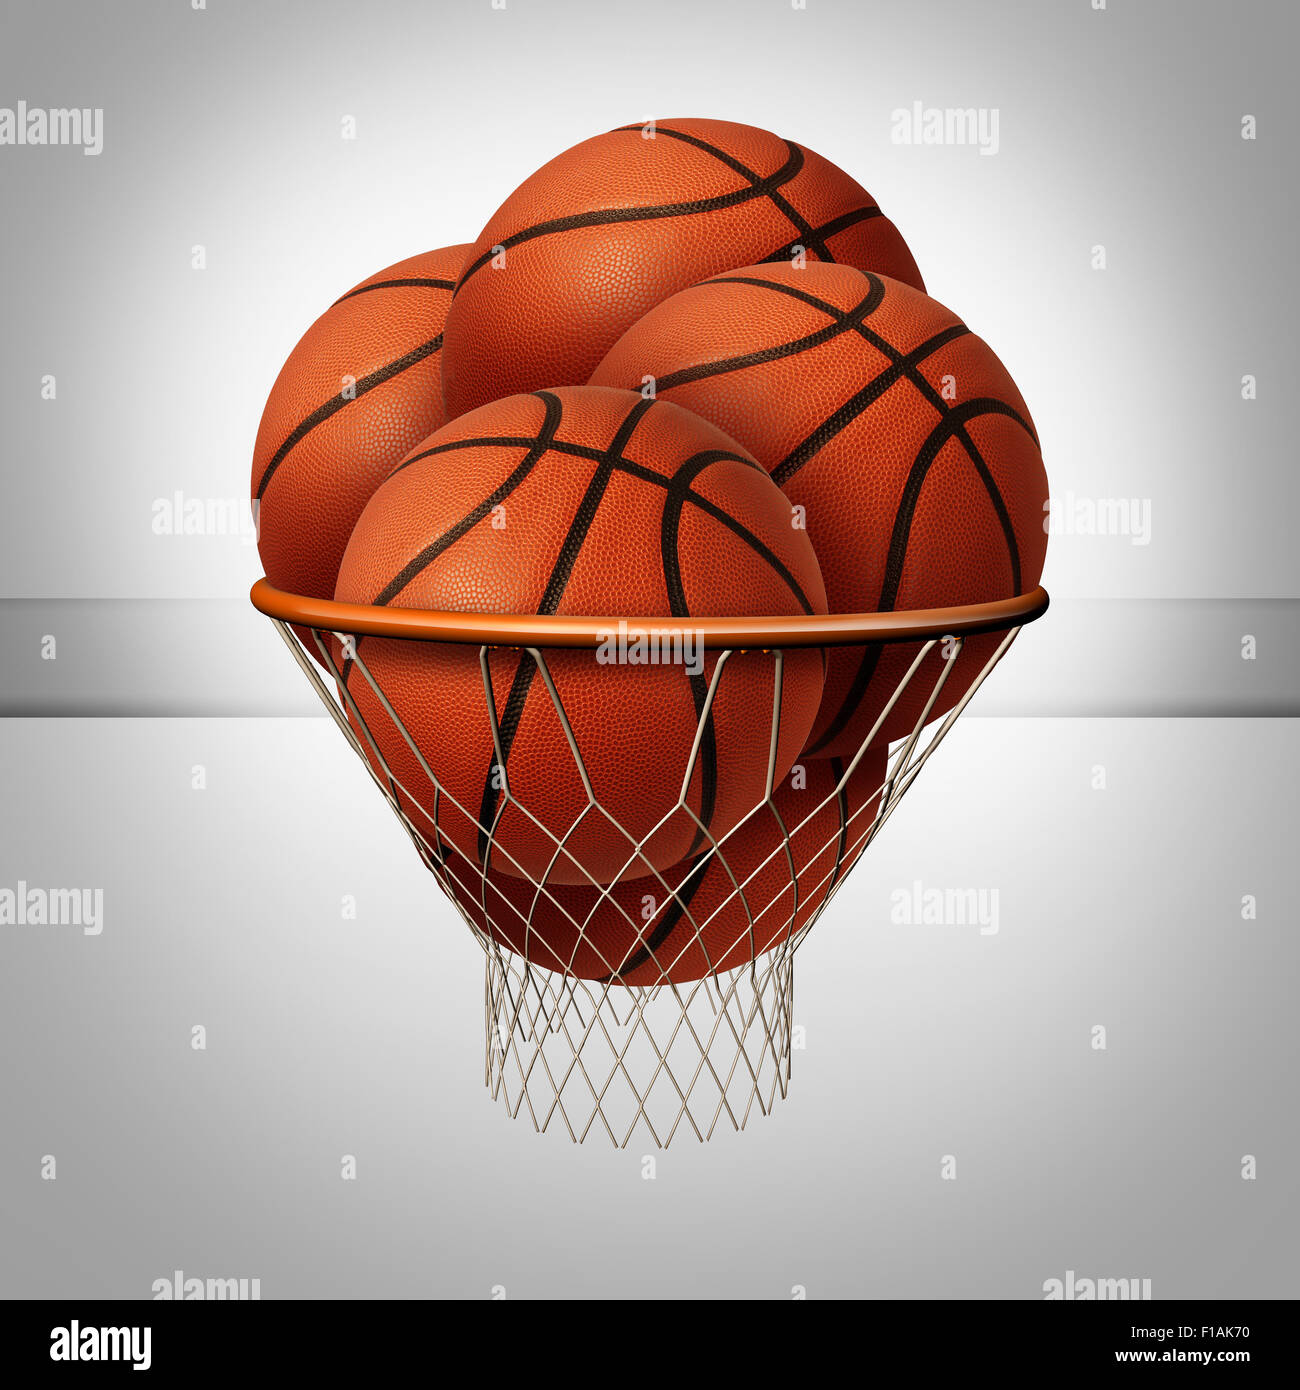 Concetto di prosperità e sopra il simbolo di successo come un gruppo di basketballs all'interno di un pallone da basket net come un icona per exessive il profitto come una metafora di business. Foto Stock